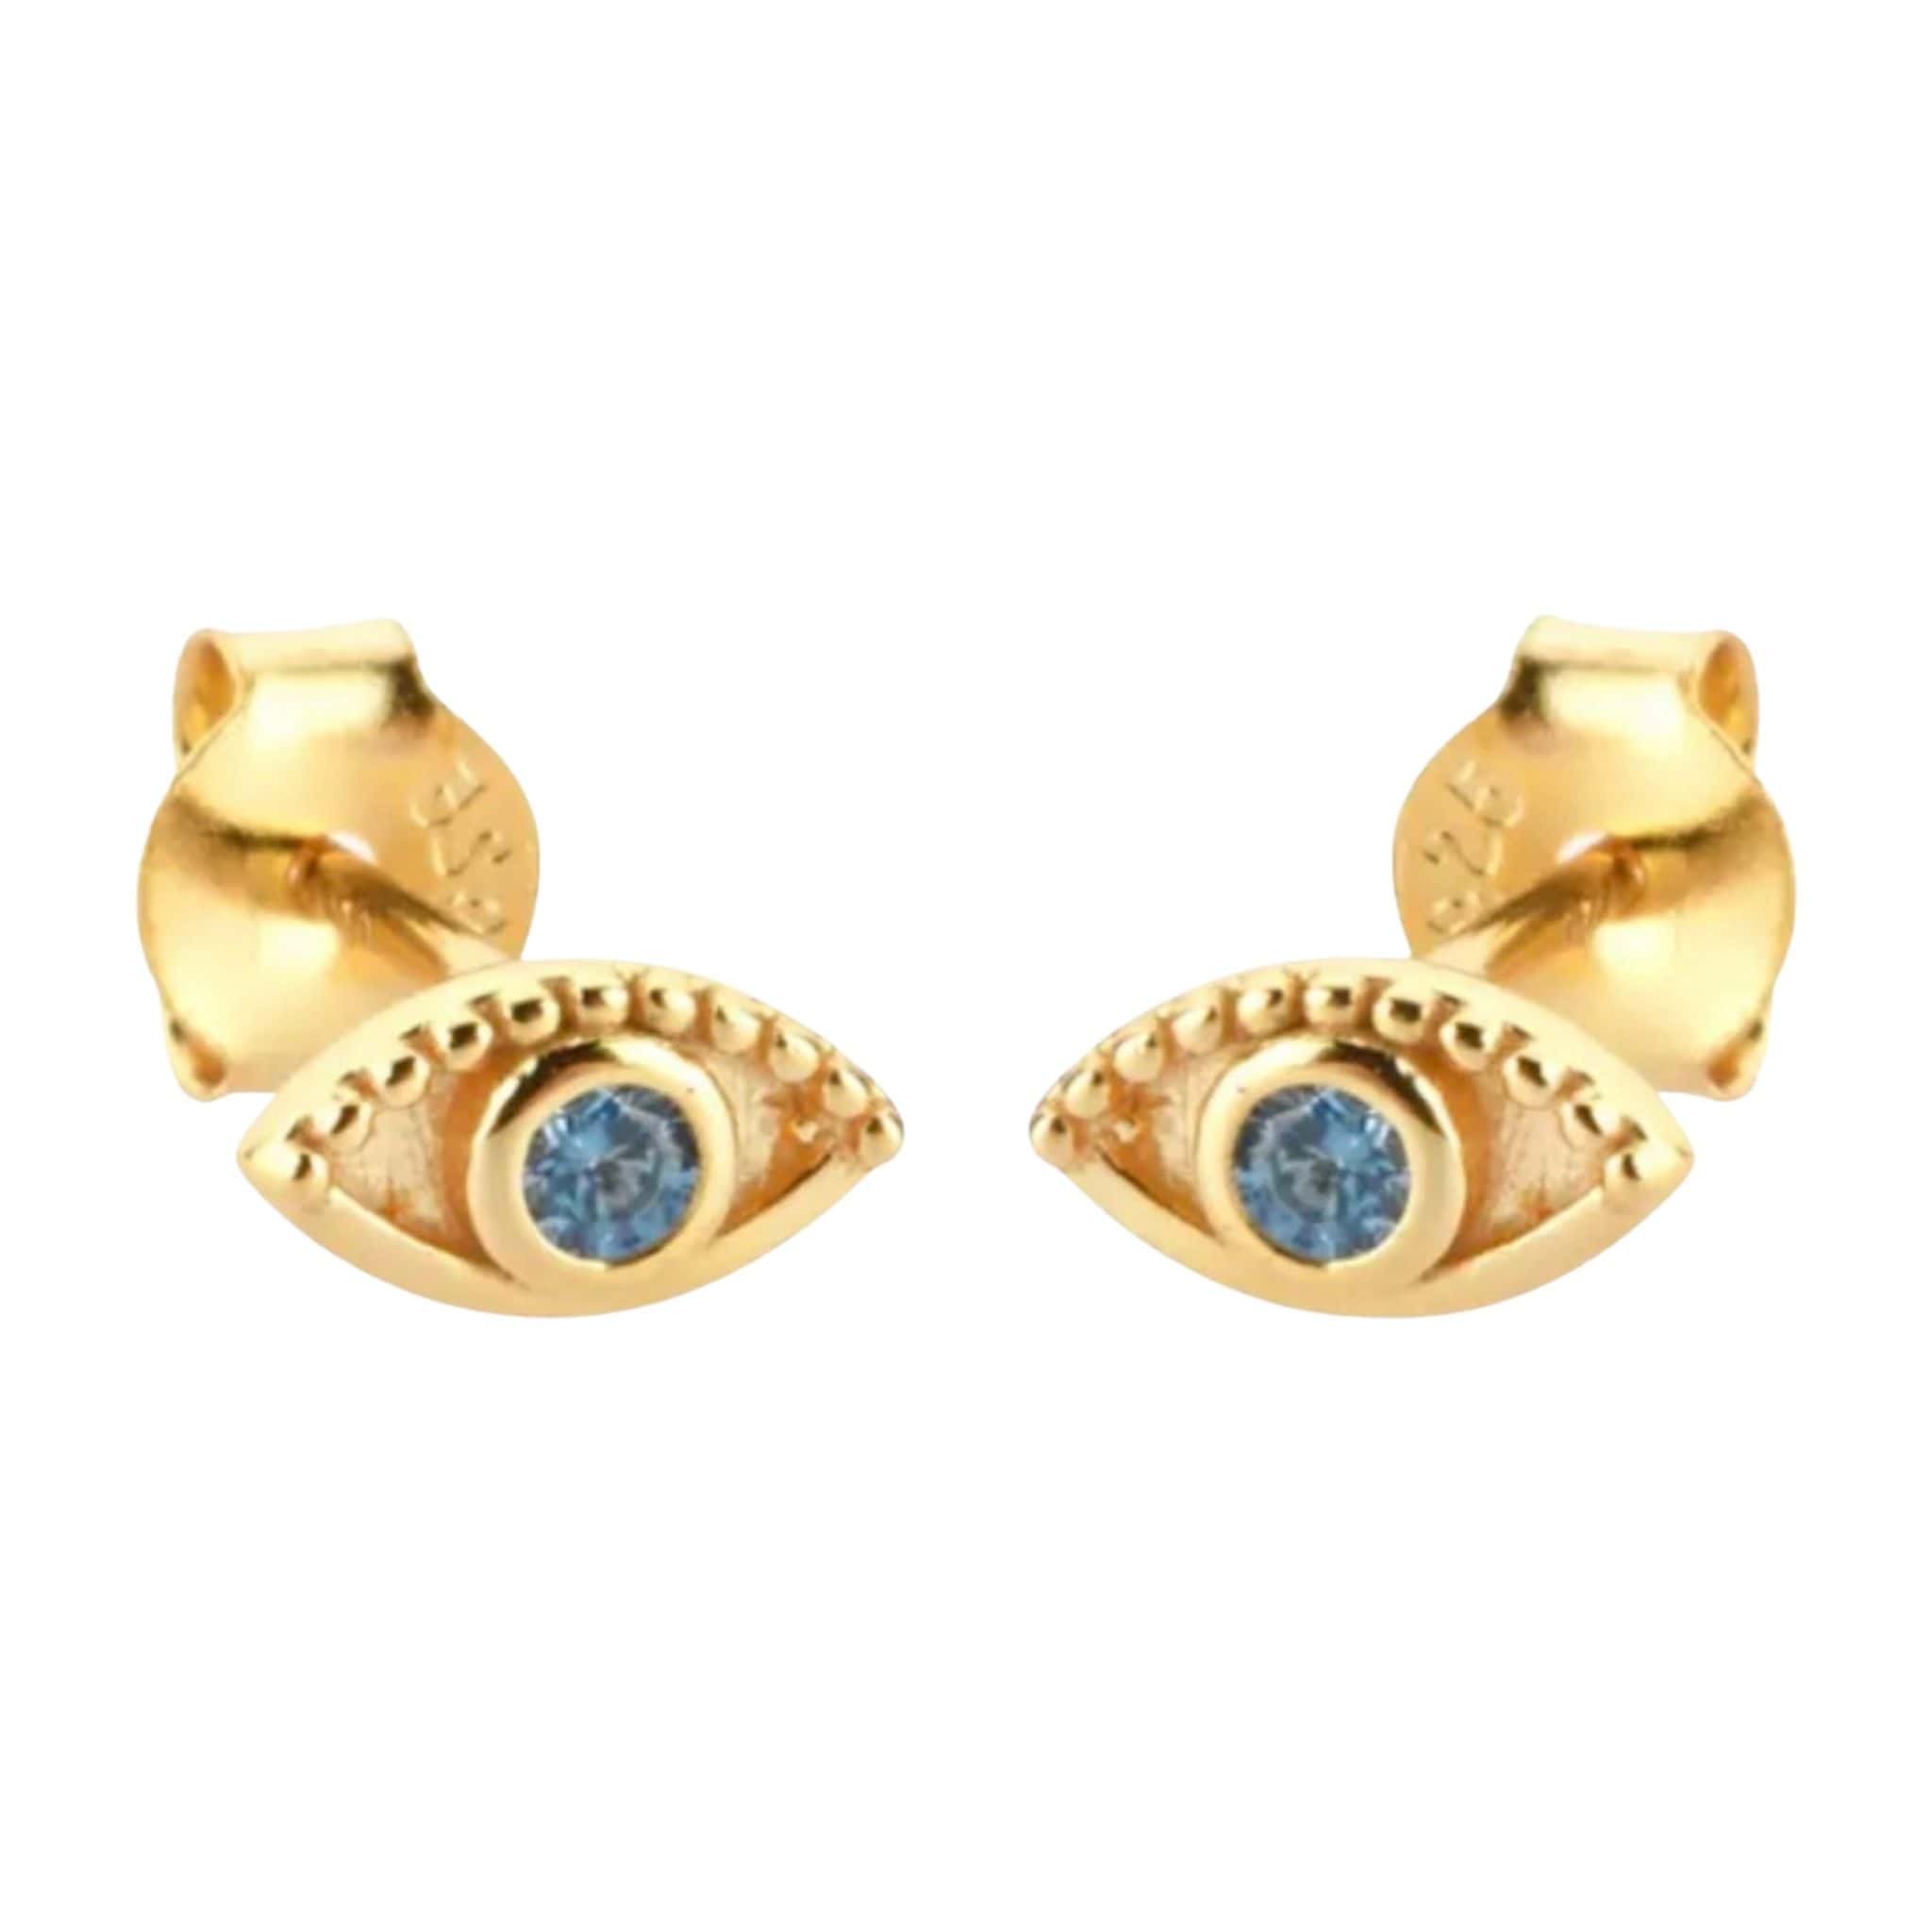 Product Afbeelding Vooraanzicht van onze prachtige gouden earstuds boze oog. Deze oorbellen zijn gemaakt van 925 sterling zilver met een laagje 14 karaat goud. De zirkonia steentjes zijn licht blauw.